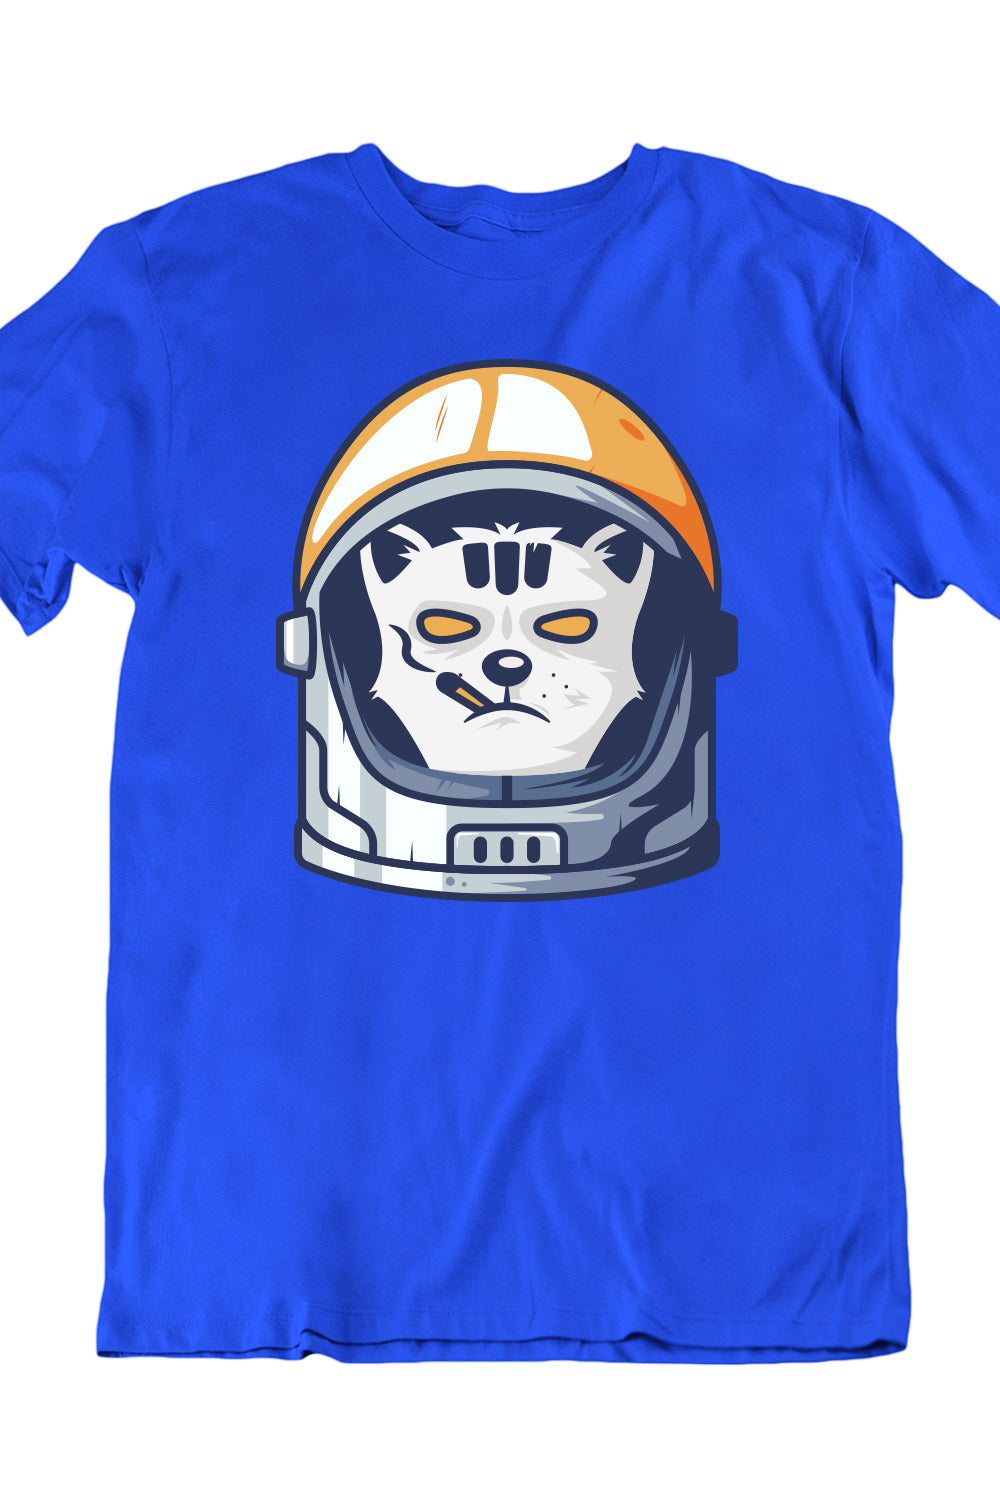 Smoking Space Fox Blue Tshirt